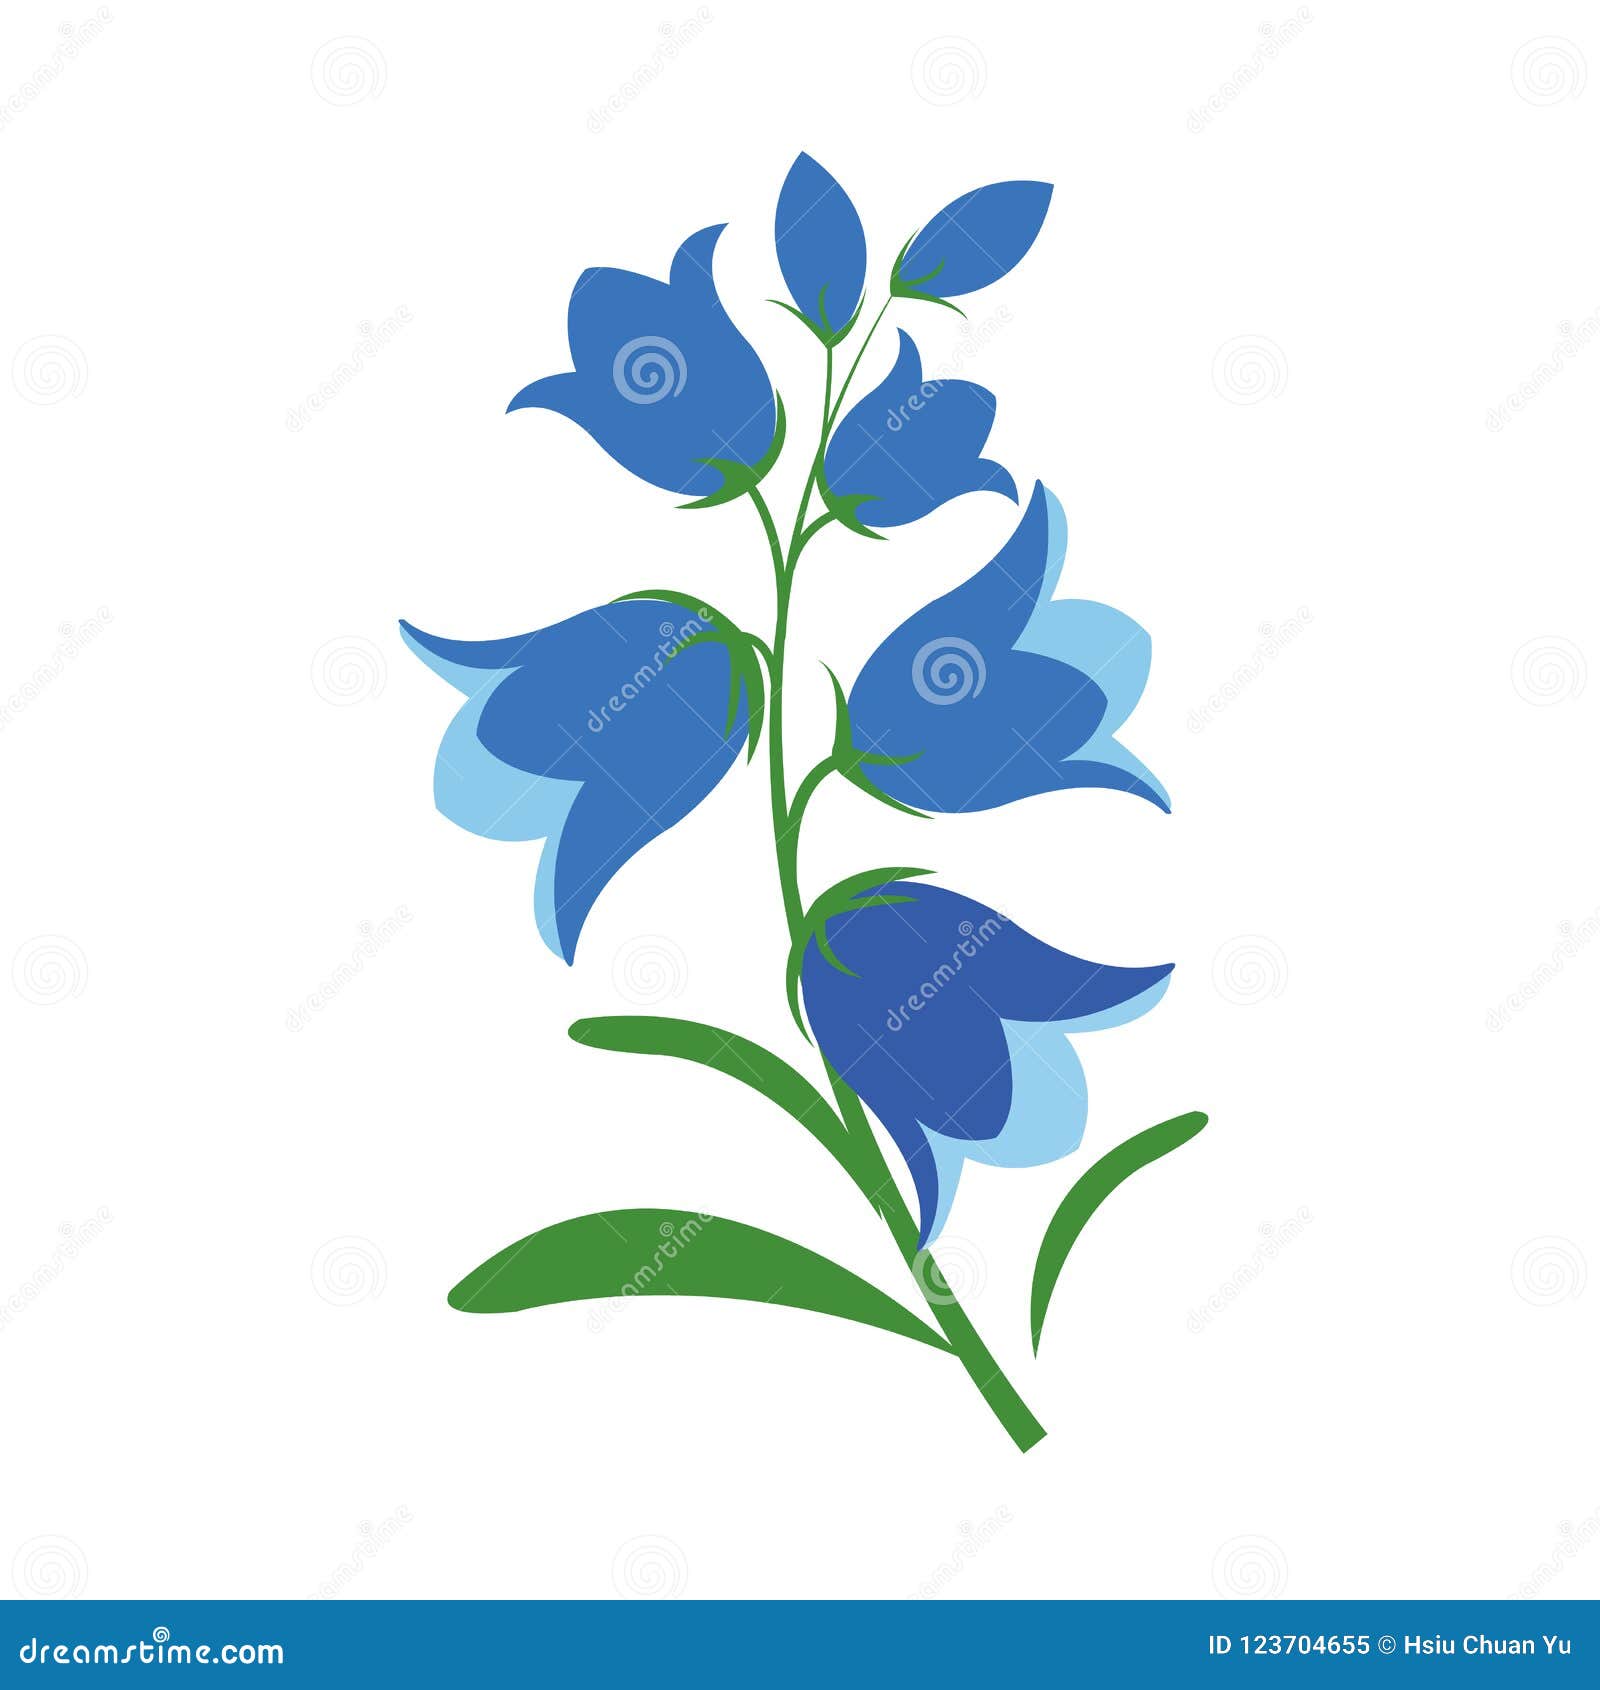 a nature flower bluebell flower